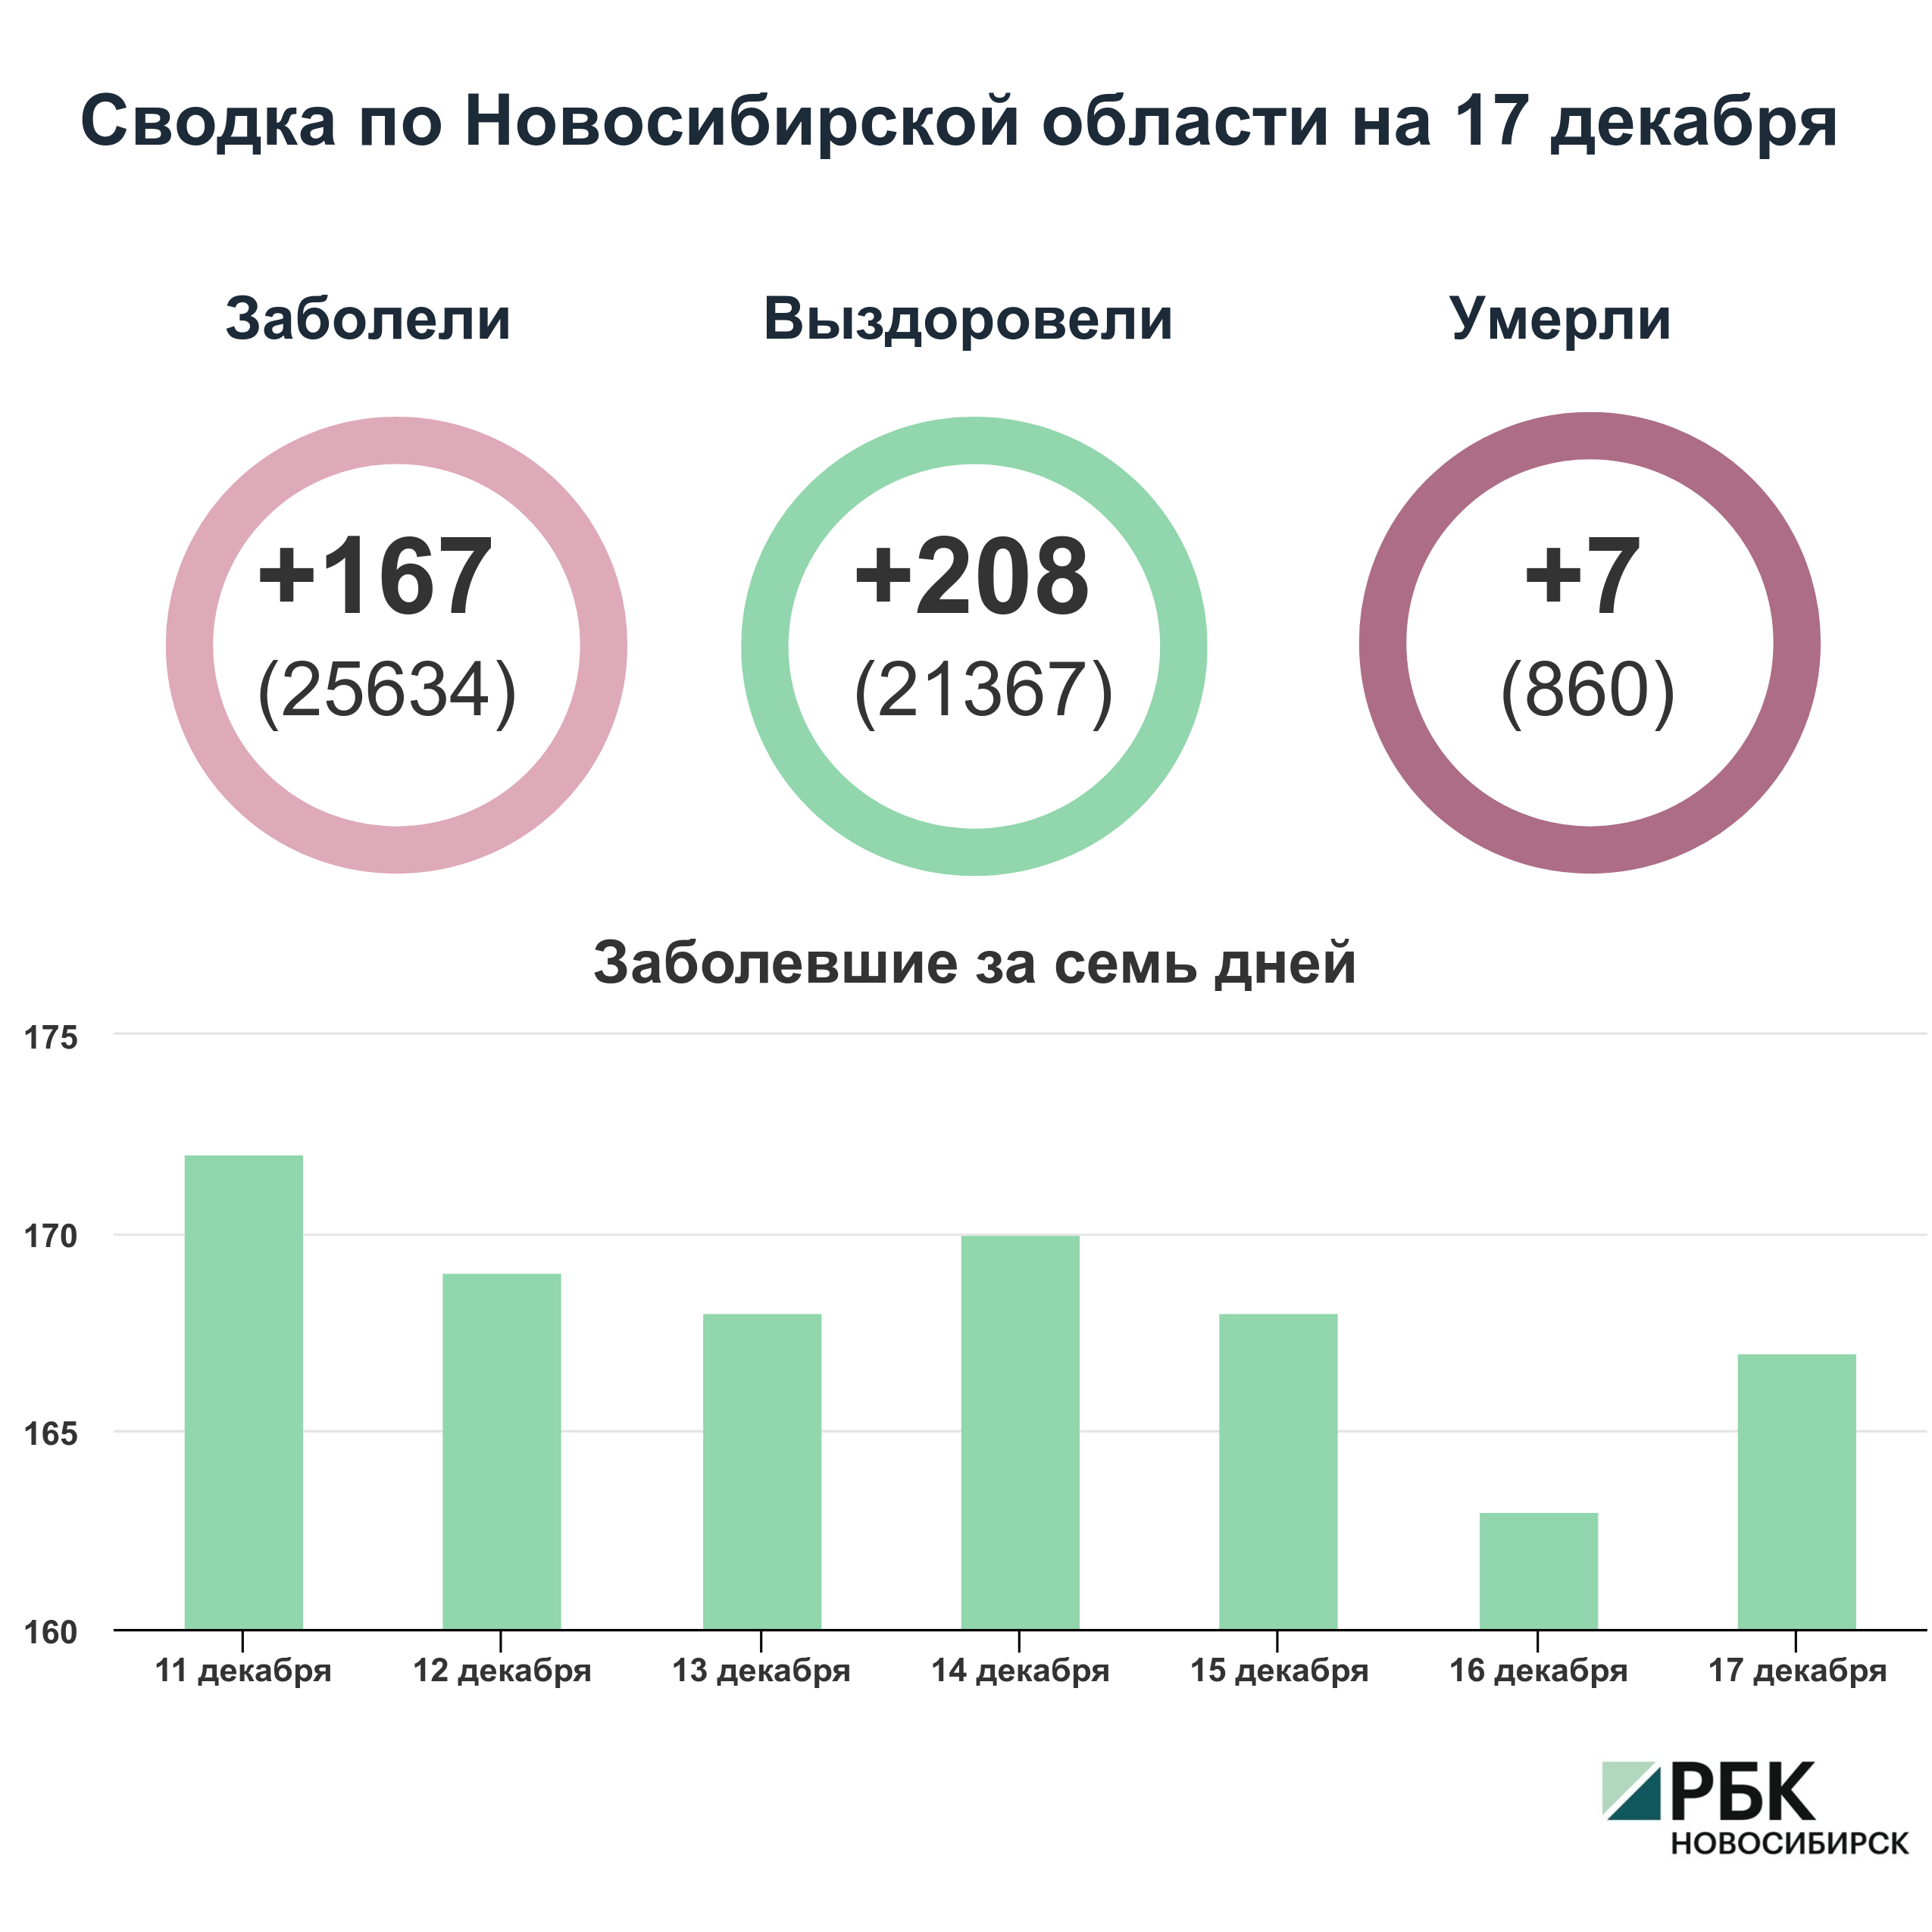 Коронавирус в Новосибирске: сводка на 17 декабря